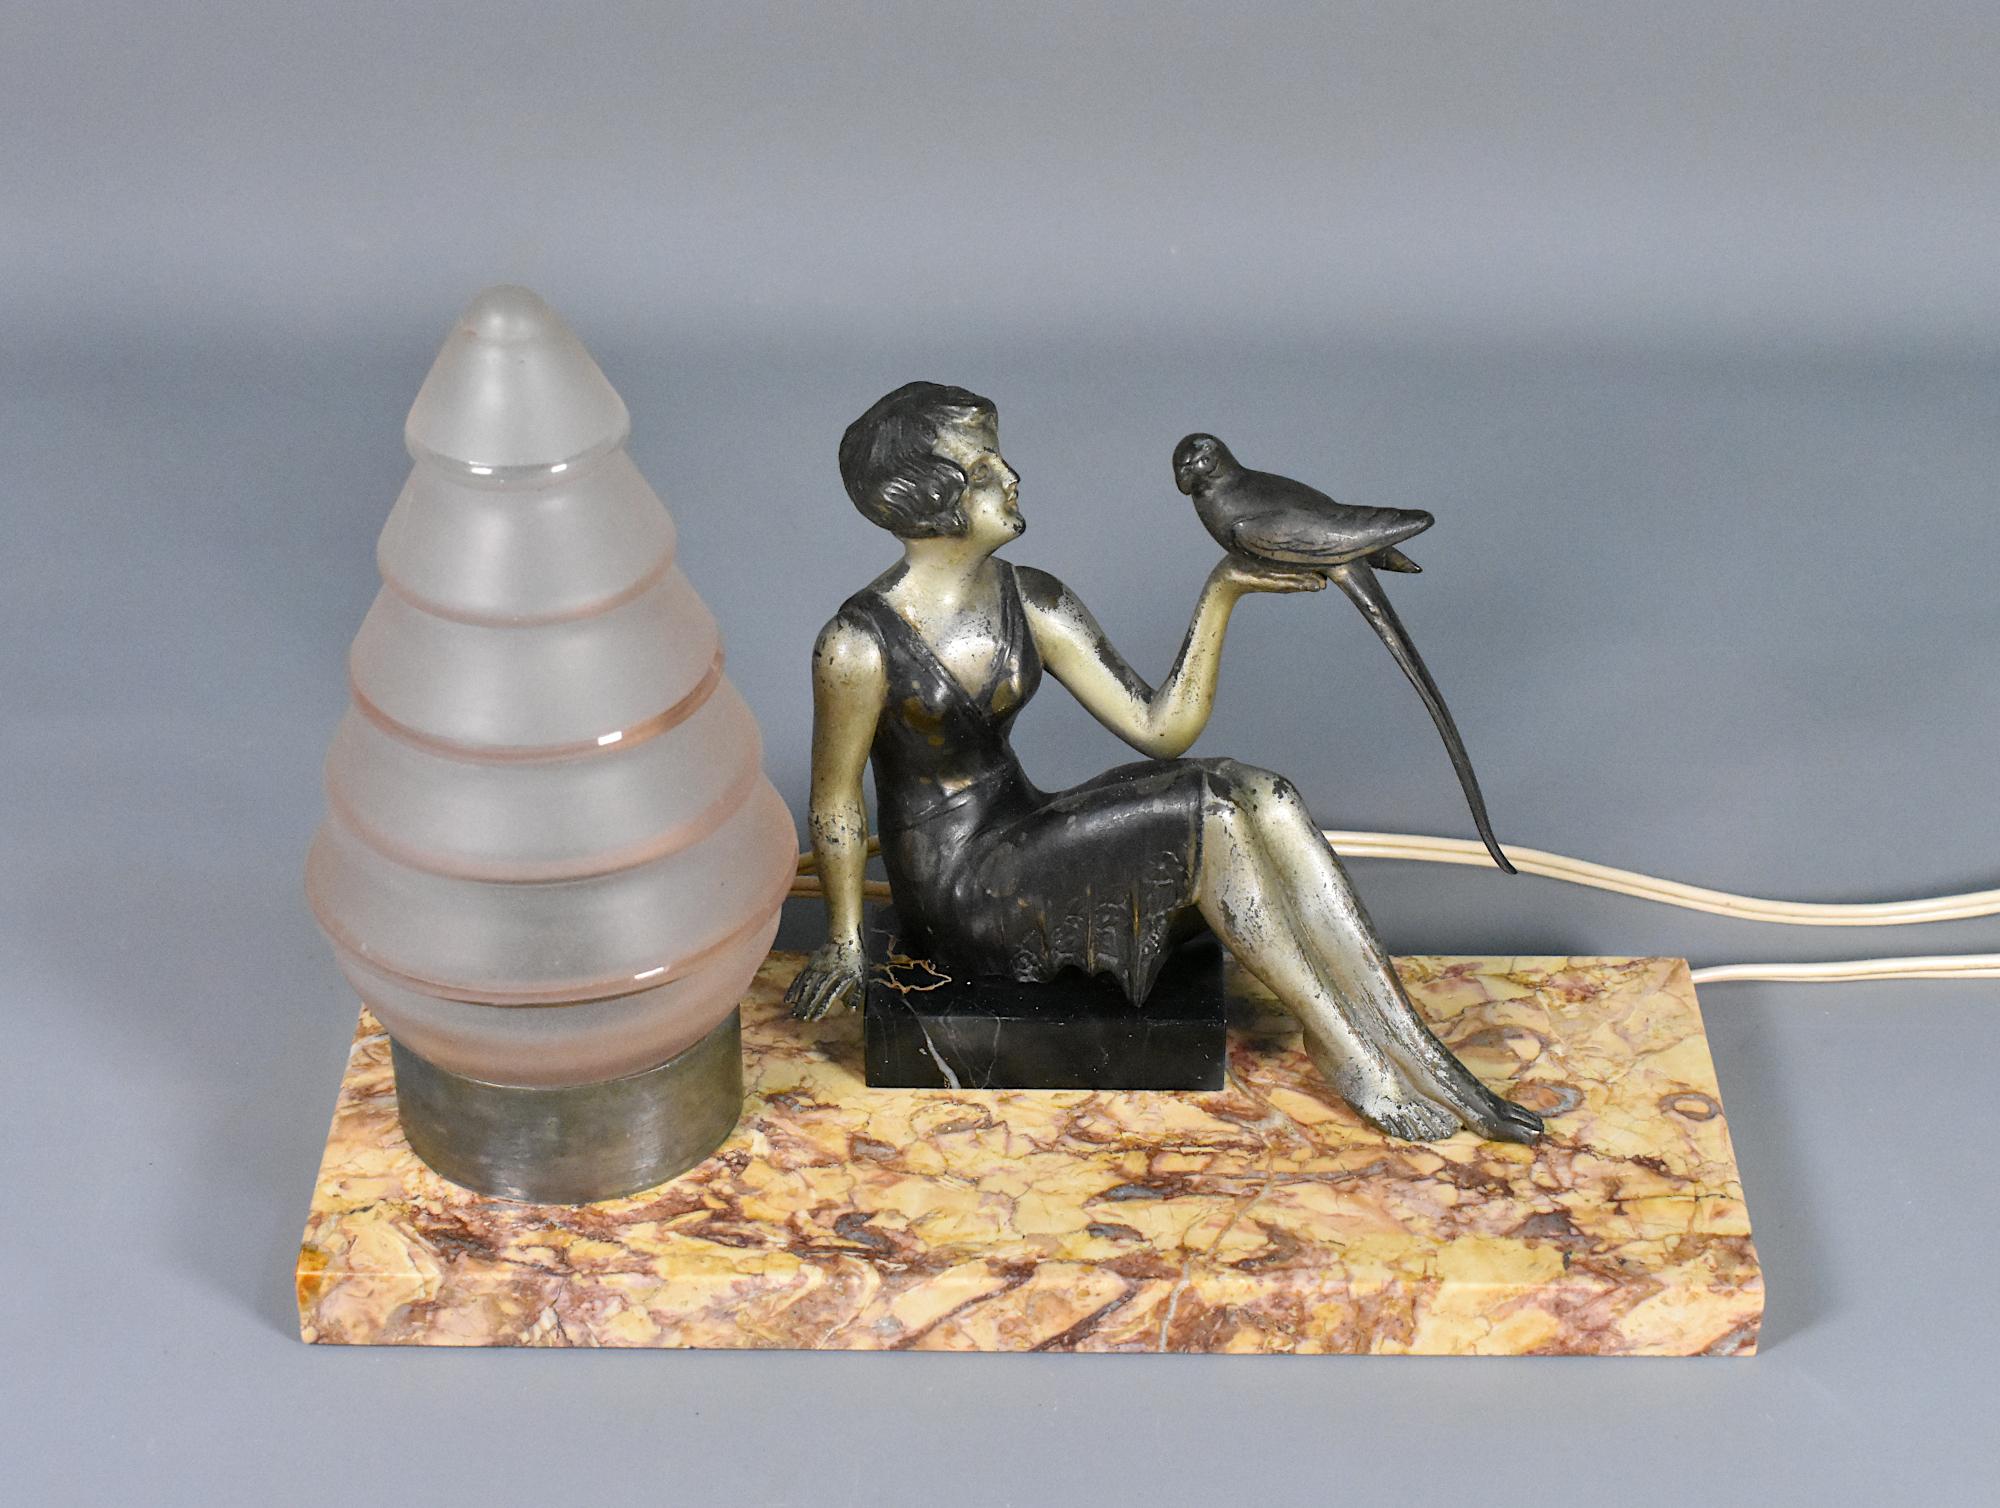 Französische Art Deco Tischlampe 

Eine entzückende Art-Deco-Tischlampe mit einer stilvollen Dame, gekleidet in der Mode der Zeit mit einem Bob-Haarschnitt. Mit ausgestrecktem Arm hält sie einen Vogel.  

Die aus Zinn gegossene Damenfigur steht auf